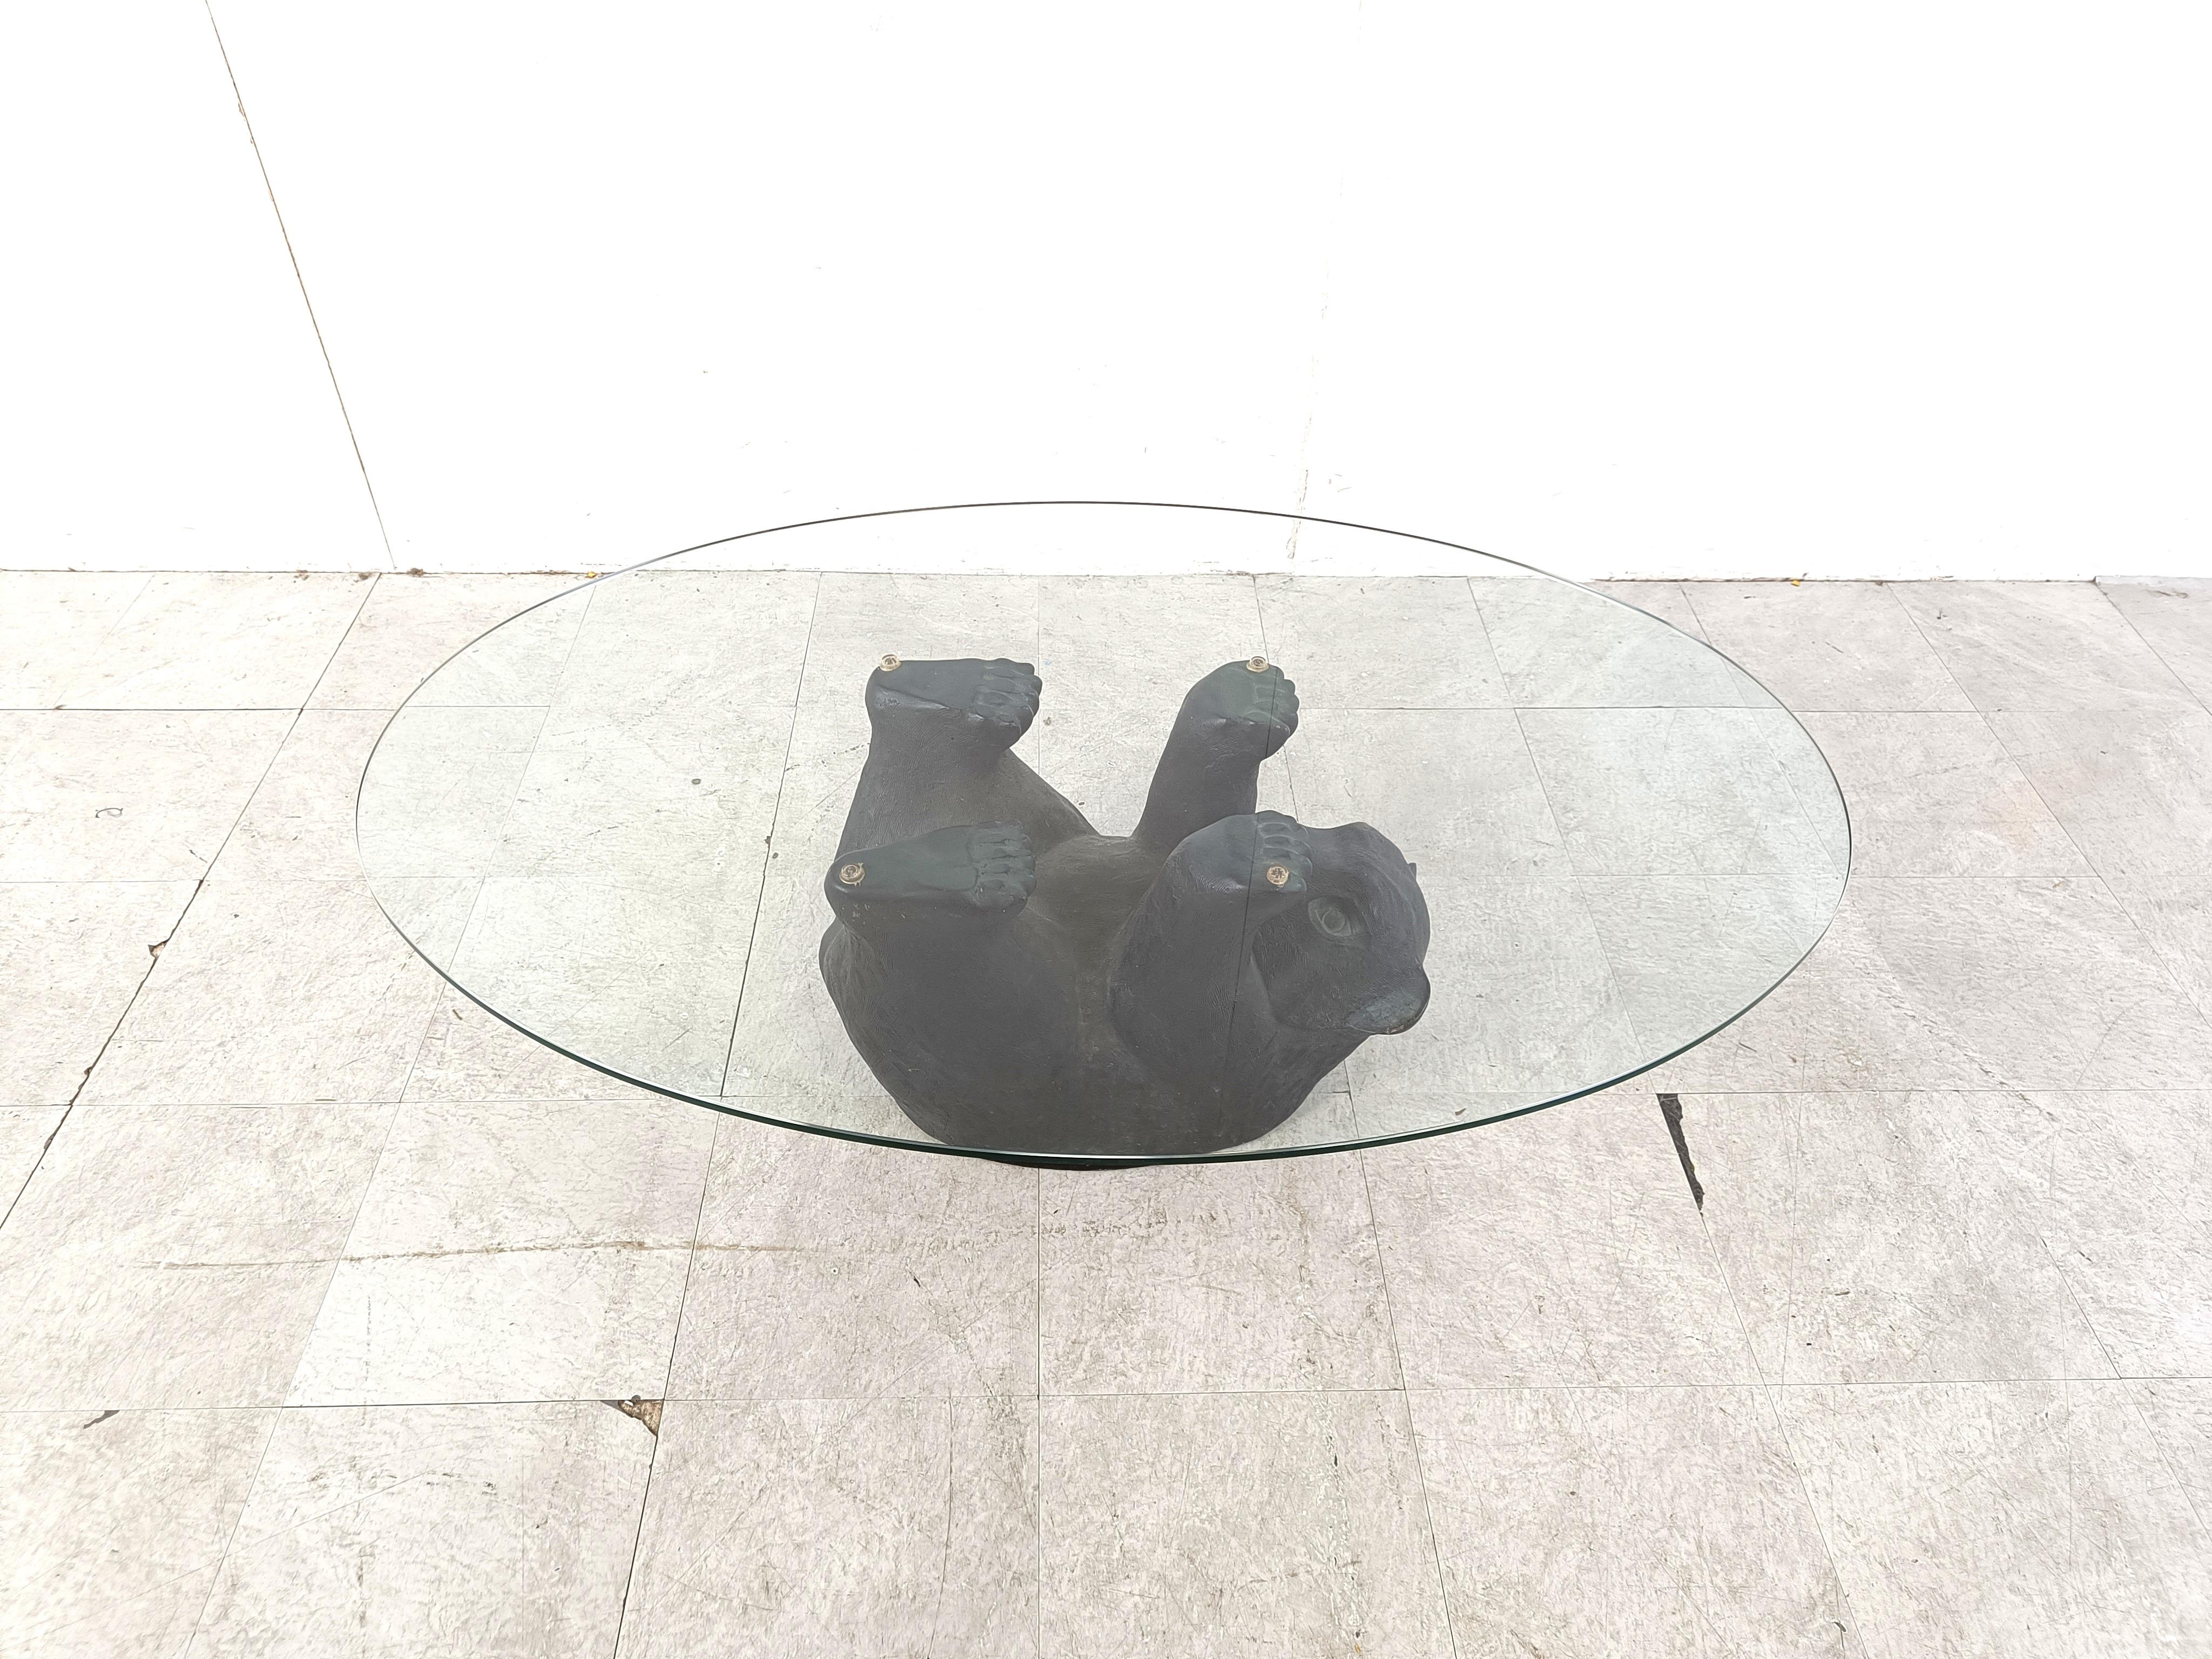 Table basse sculpturale en forme d'ours noir.

Cette table unique est très esthétique et plutôt mignonne.

Années 1970 - Belgique

Bon état

Dimensions de la base :
Hauteur : 40cm
Largeur : 110cm
Profondeur : 90cm

Réf. : 063877
